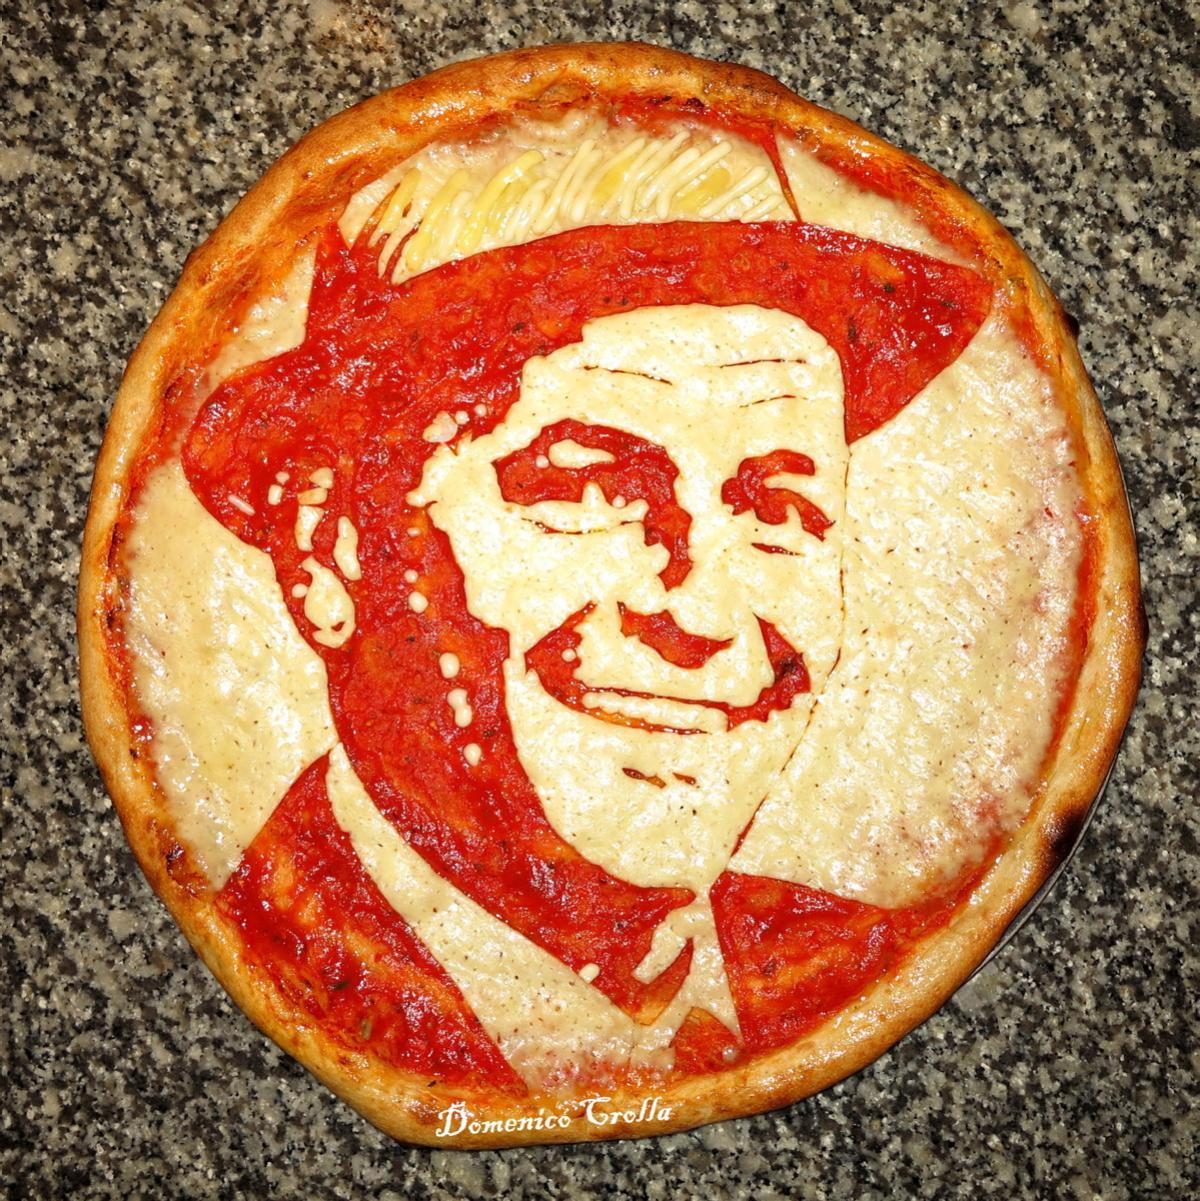 chef conquista instagram con retratos en pizzas frank sinatra pizza portrait